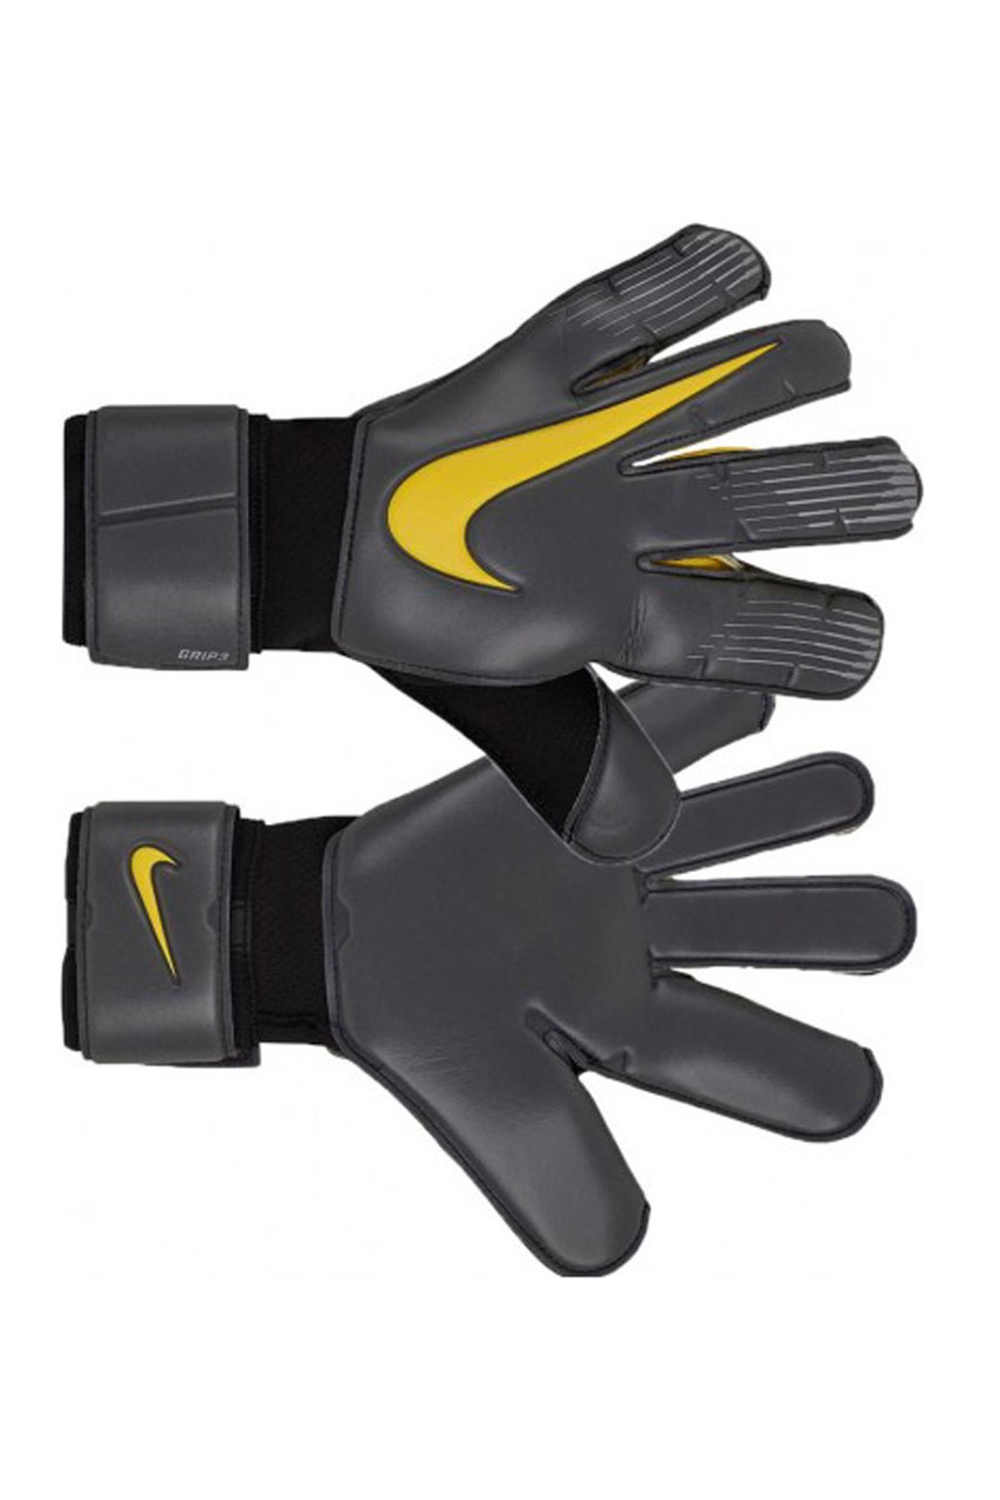 Ανδρικά/Αξεσουάρ/Αθλητικά Είδη/Εξοπλισμός NIKE - Unisex γάντια τερματοφύλακα Nike Grip3 Goalkeeper ανθρακί